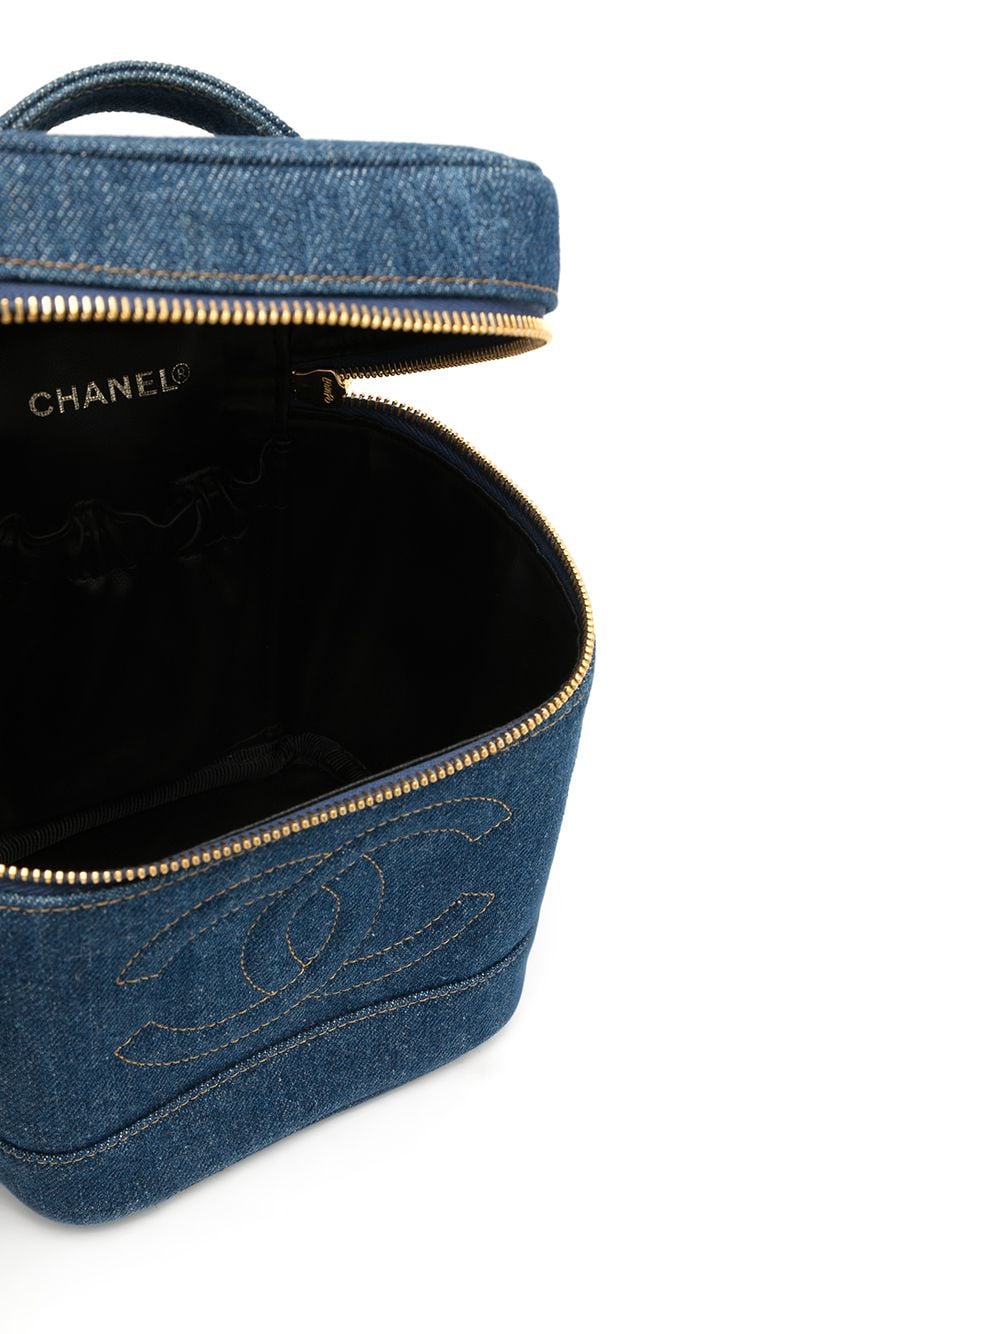 CHANEL Pre-Owned Wild Stitch CC Shoulder Bag - Farfetch